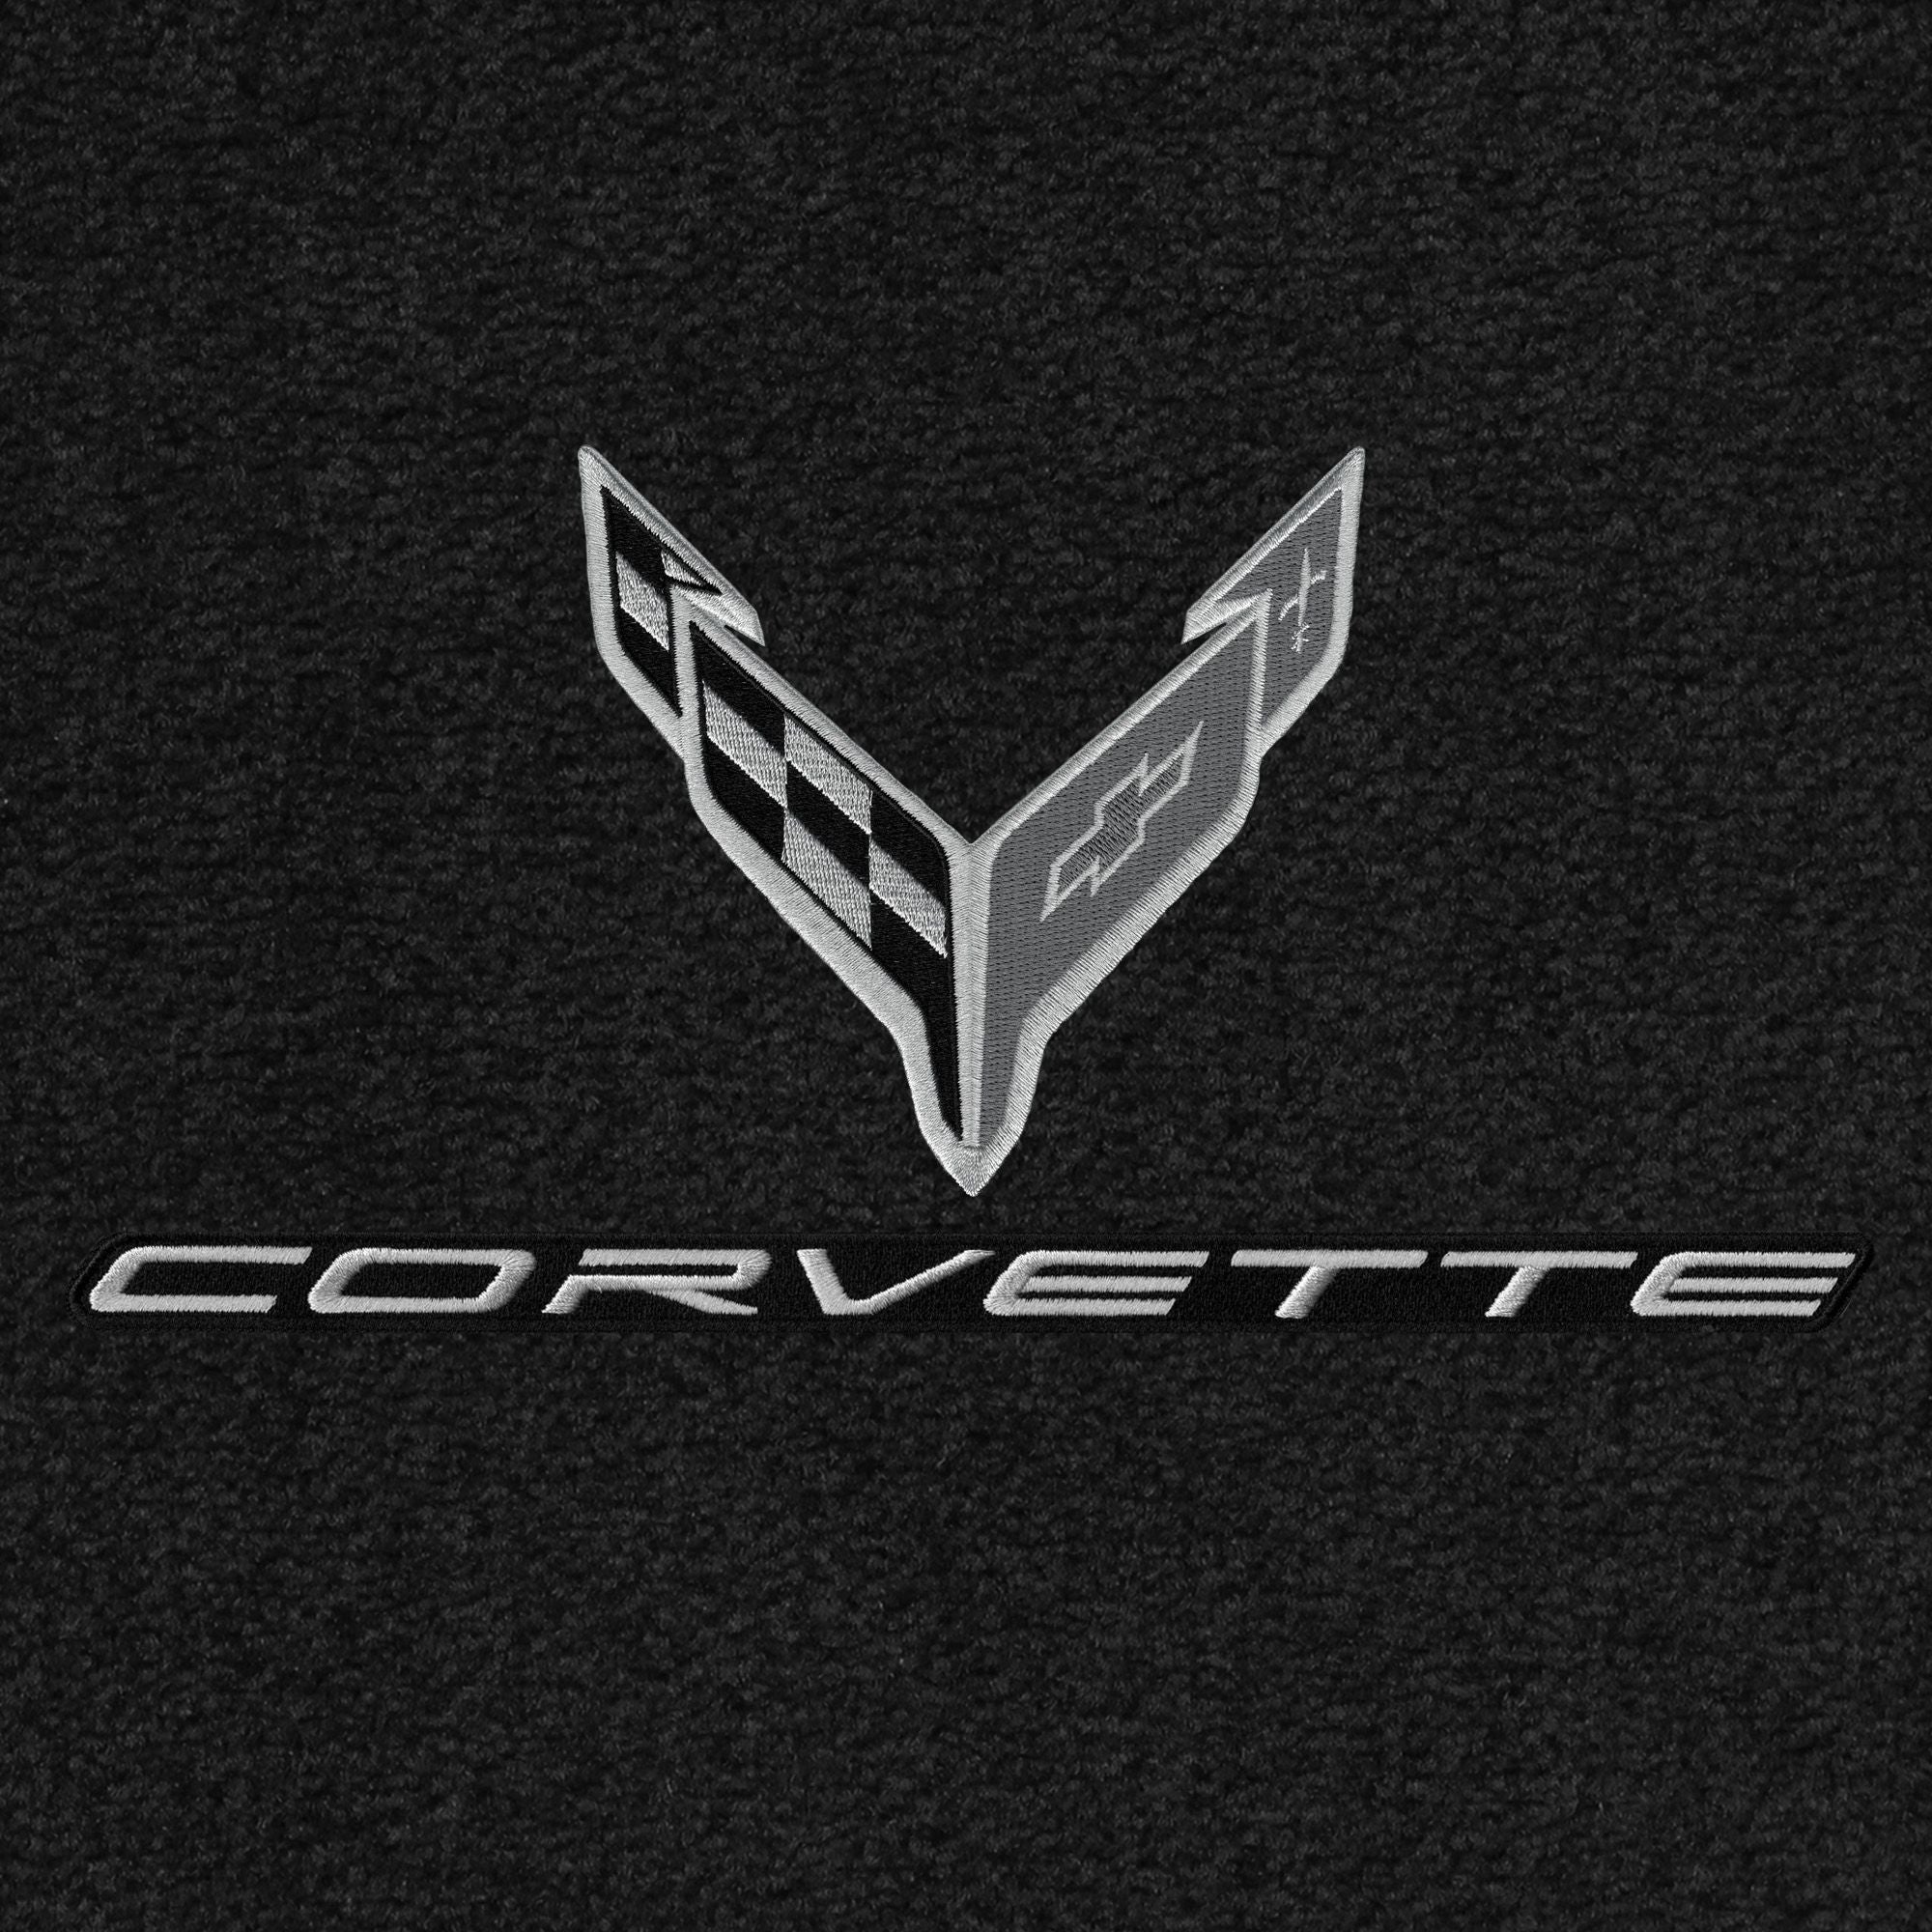 C8 Corvette Front Cargo Mat - Lloyds Mats with C8 Crossed Flags & Corvette Script